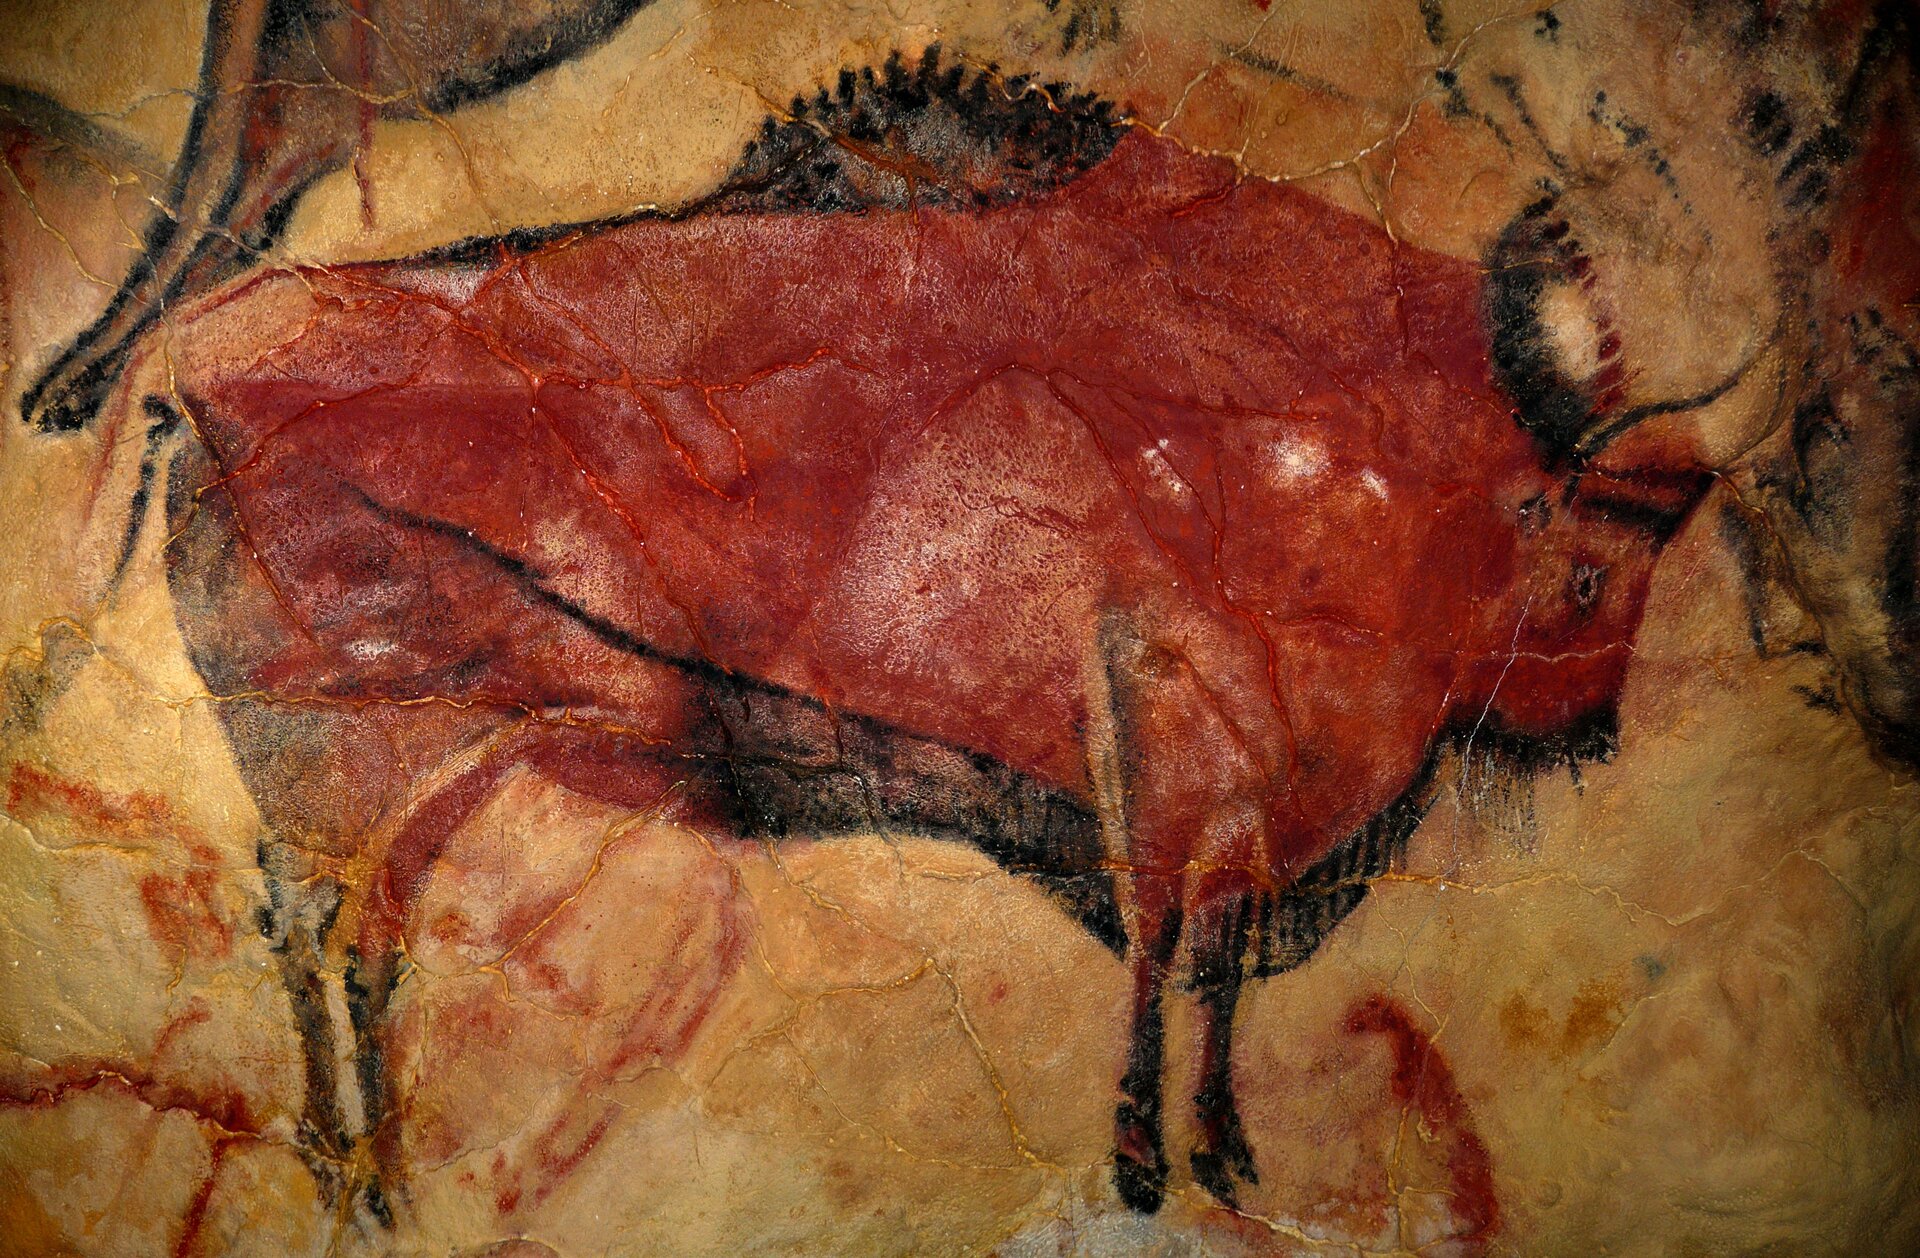 Ilustracja przedstawia dużego bizona z profilu. Jest on namalowany czerwoną farbą, a jego grzywa oraz włosy znajdujące się u dołu tułowia są czarne. Tło za bizonem żółte.